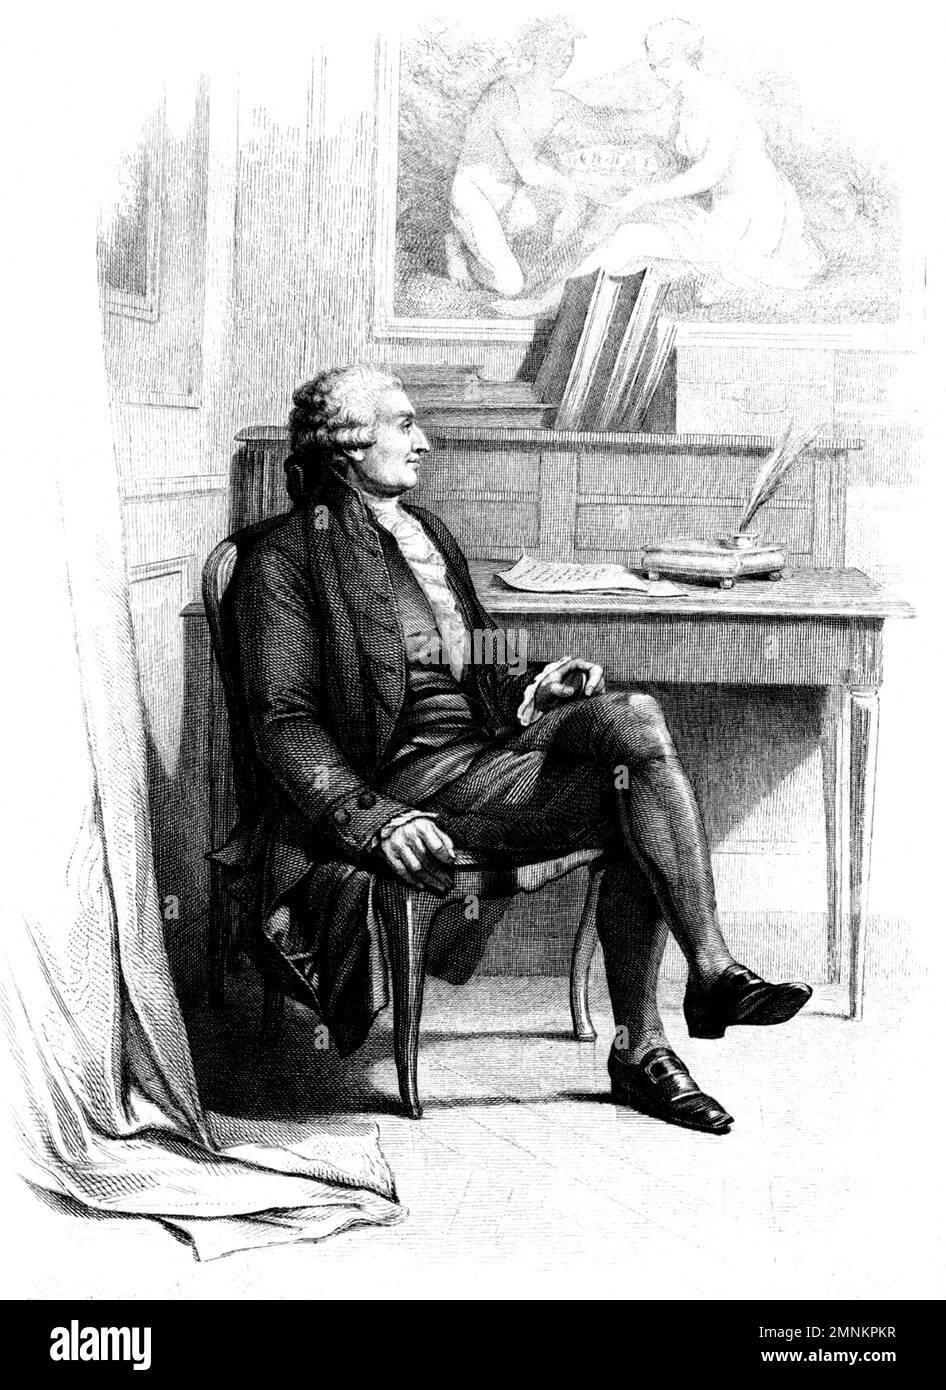 1794 aprox. FRANCIA: El célebre francés NICOLAS DE CONDORCET ( 1743 - 1794 ), político , economista , matemático , escritor y filósofo . Grabador desconocido , siglo XIX . - SCIENZA - RITRATTO - RETRATO - SCRITTORE - FILOSOFO - FILOSOFIA - FILOSOFÍA - SCIENZIATO - CIENZA - CIENTÍFICO- HISTORIA - FOTO STORICHE - MATEMATICO - MATEMÁTICAS - MATEMÁTICAS - MATEMÁTICAS - MATEMÁTICAS - REVOLUZIONE FRANCESA - POLÍTICA - POLÍTICA - POLÍTICA - POLÍTICO - POLÍTICO - POLÍTICO - POLÍTICO - RETRATO - Ritratto - ilustración - grabado - incisione - colletto - collar --- Archivio GBB Foto de stock